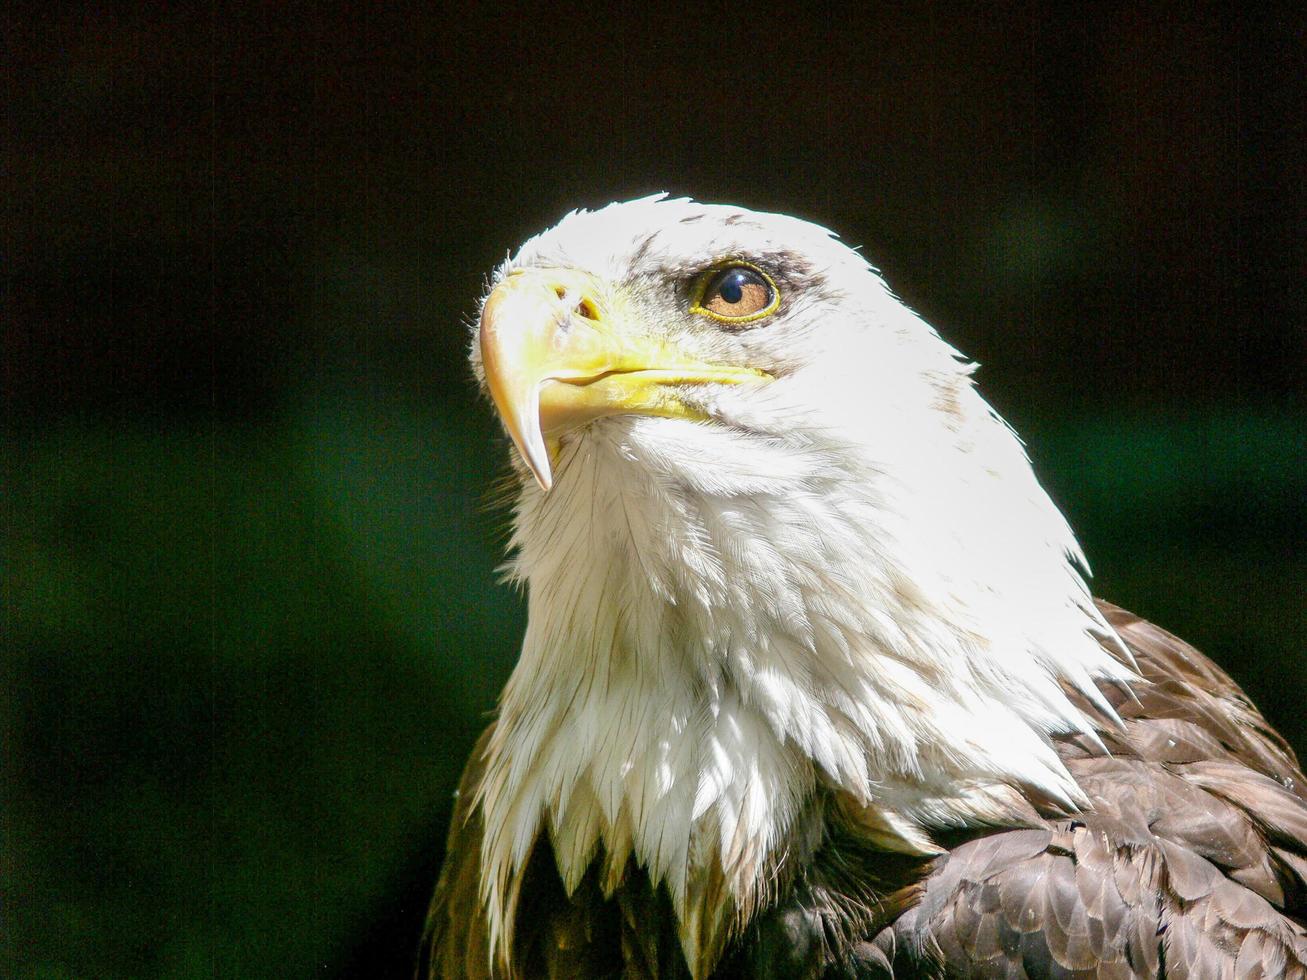 American Bald Eagle photo